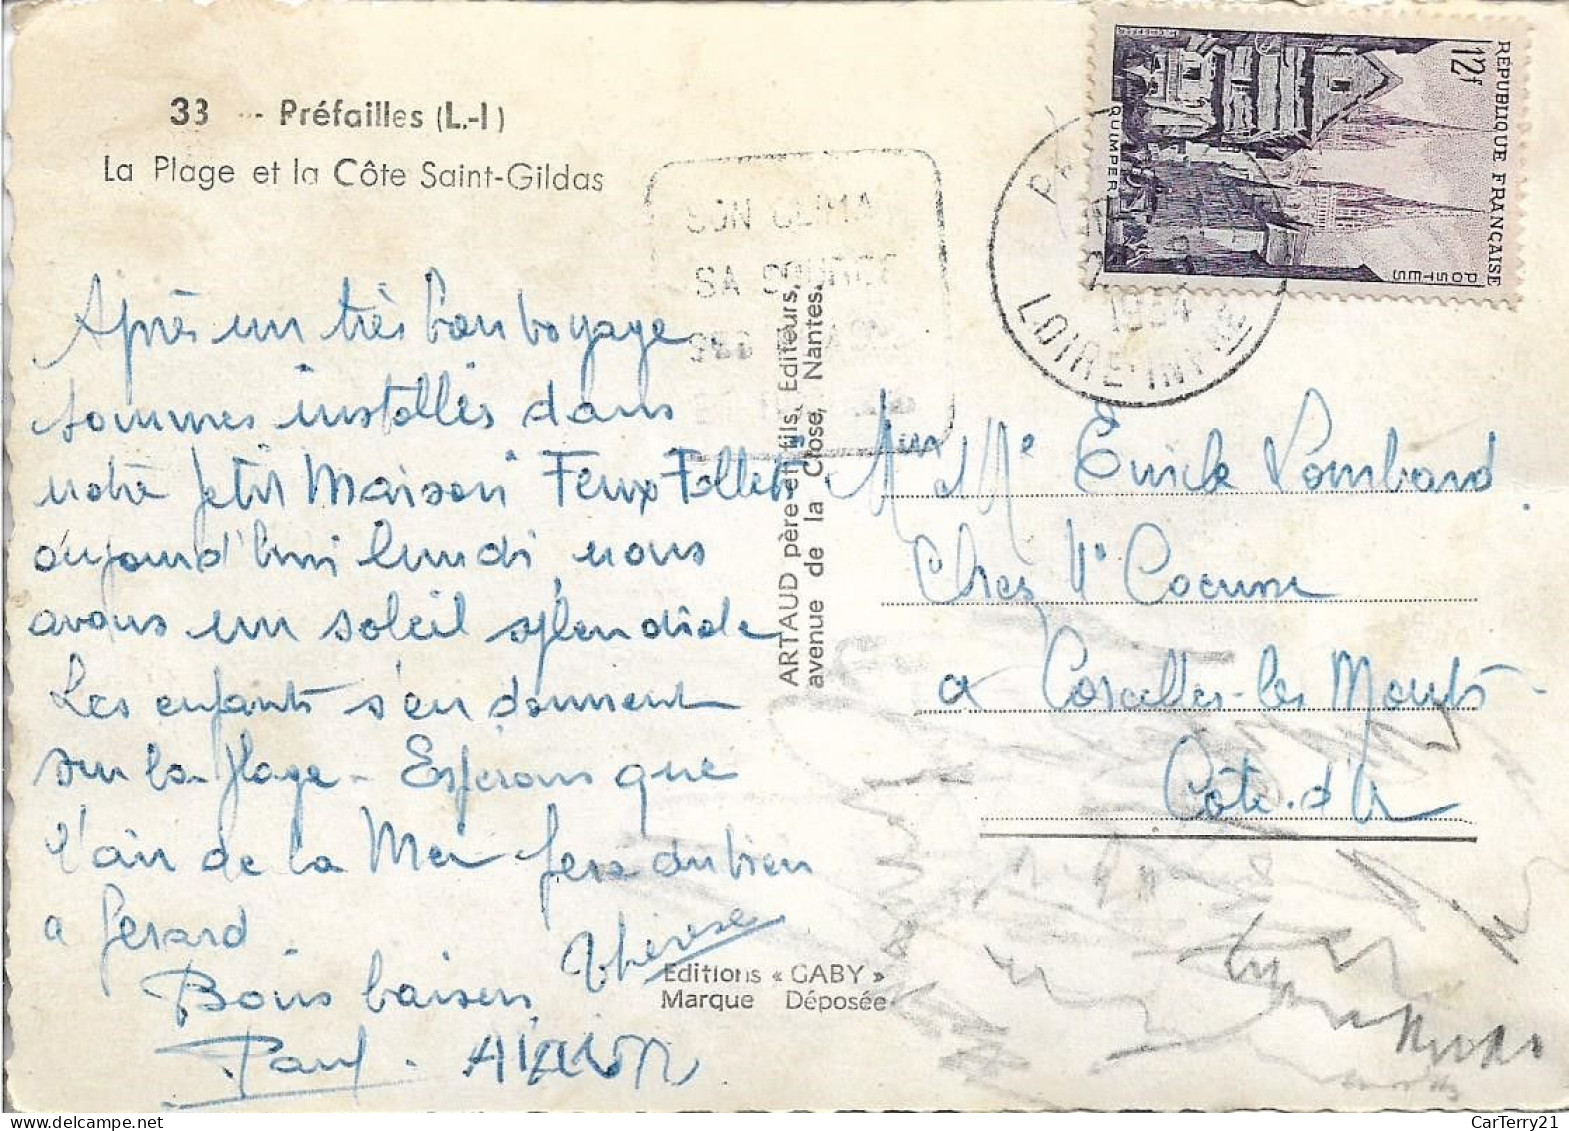 44. PREFAILLES. LA PLAGE ET LA CÔTE SAINT-GILDAS. 1954. - Préfailles